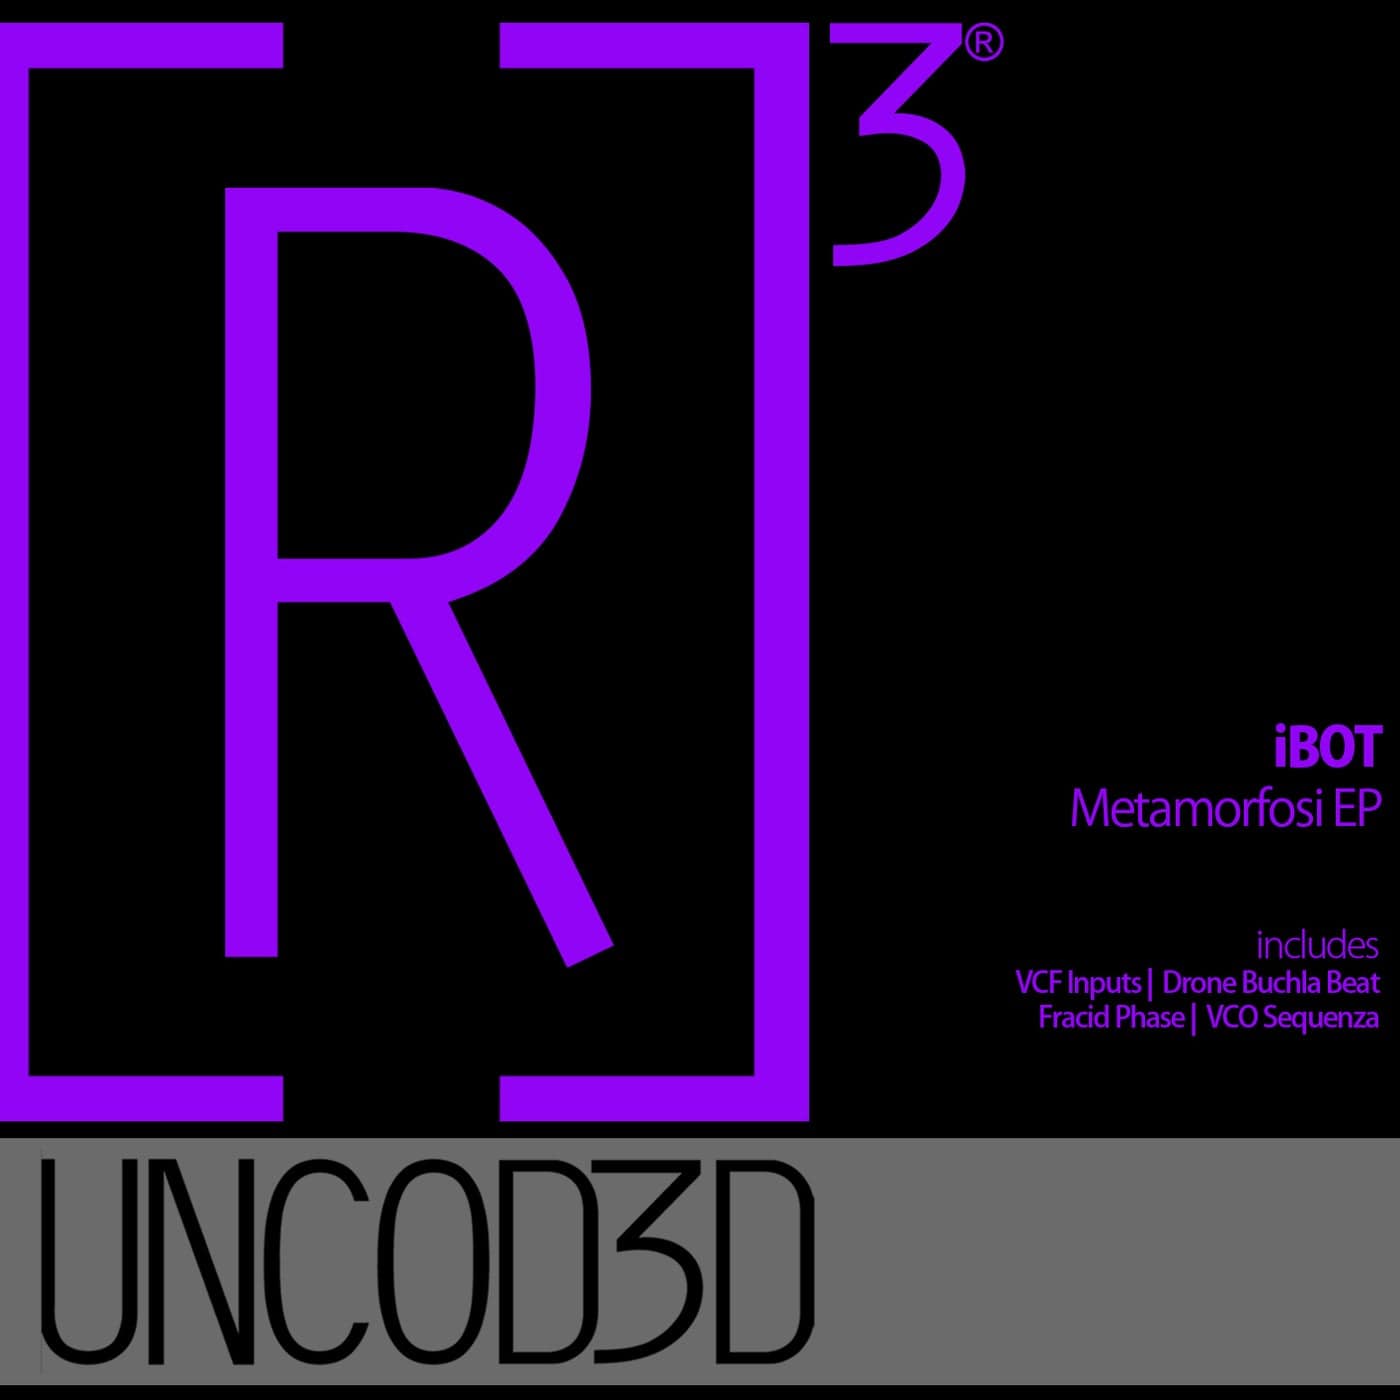 image cover: IBot - Metamorfosi EP / R3UD021